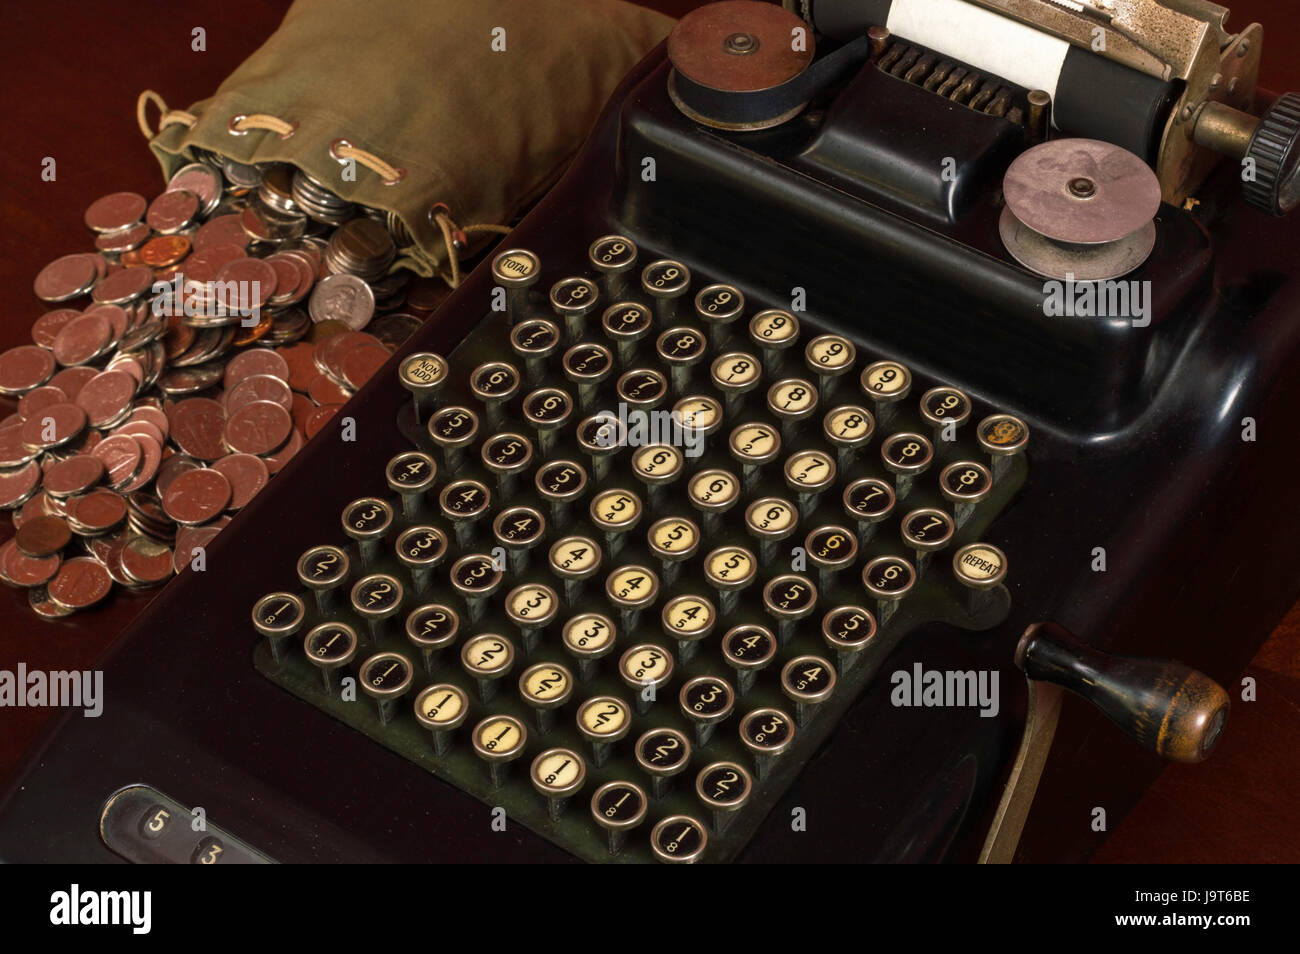 Black Antique calculadora con botones pulsadores mecánicos y una bolsa de monedas junto a ella. Foto de stock